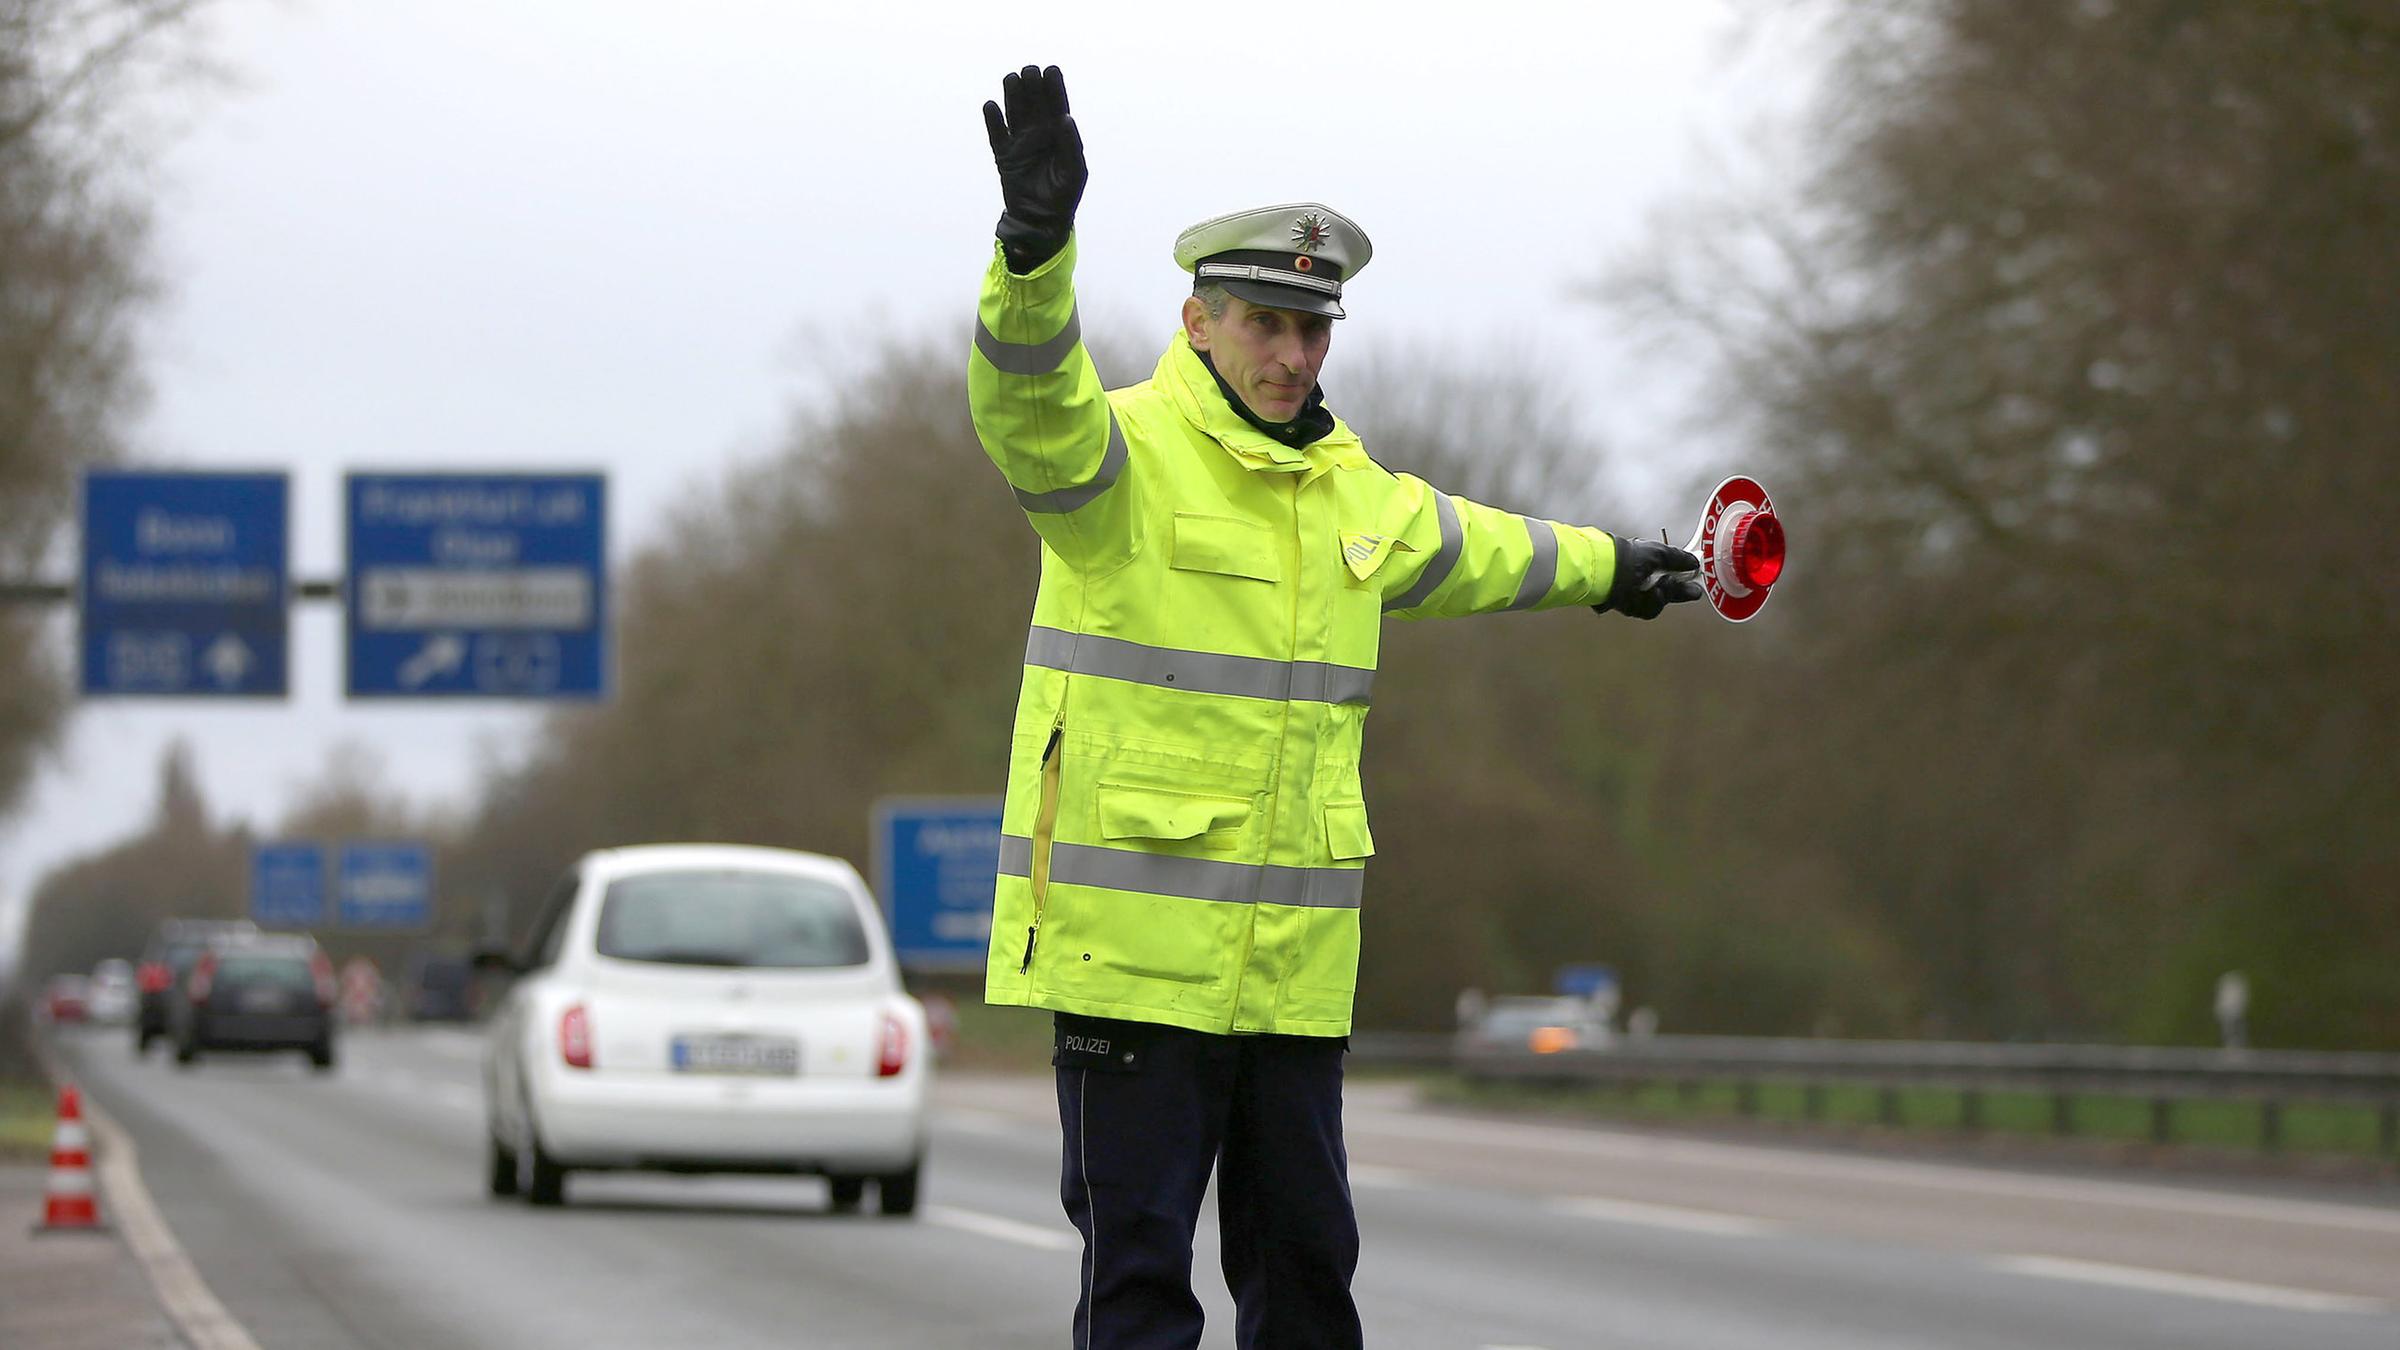 Ein Polizist winkt am 21.03.2017 auf der Autobahn 555 bei Köln (Nordrhein-Westfalen) Fahrzeuge zur Kontrolle raus